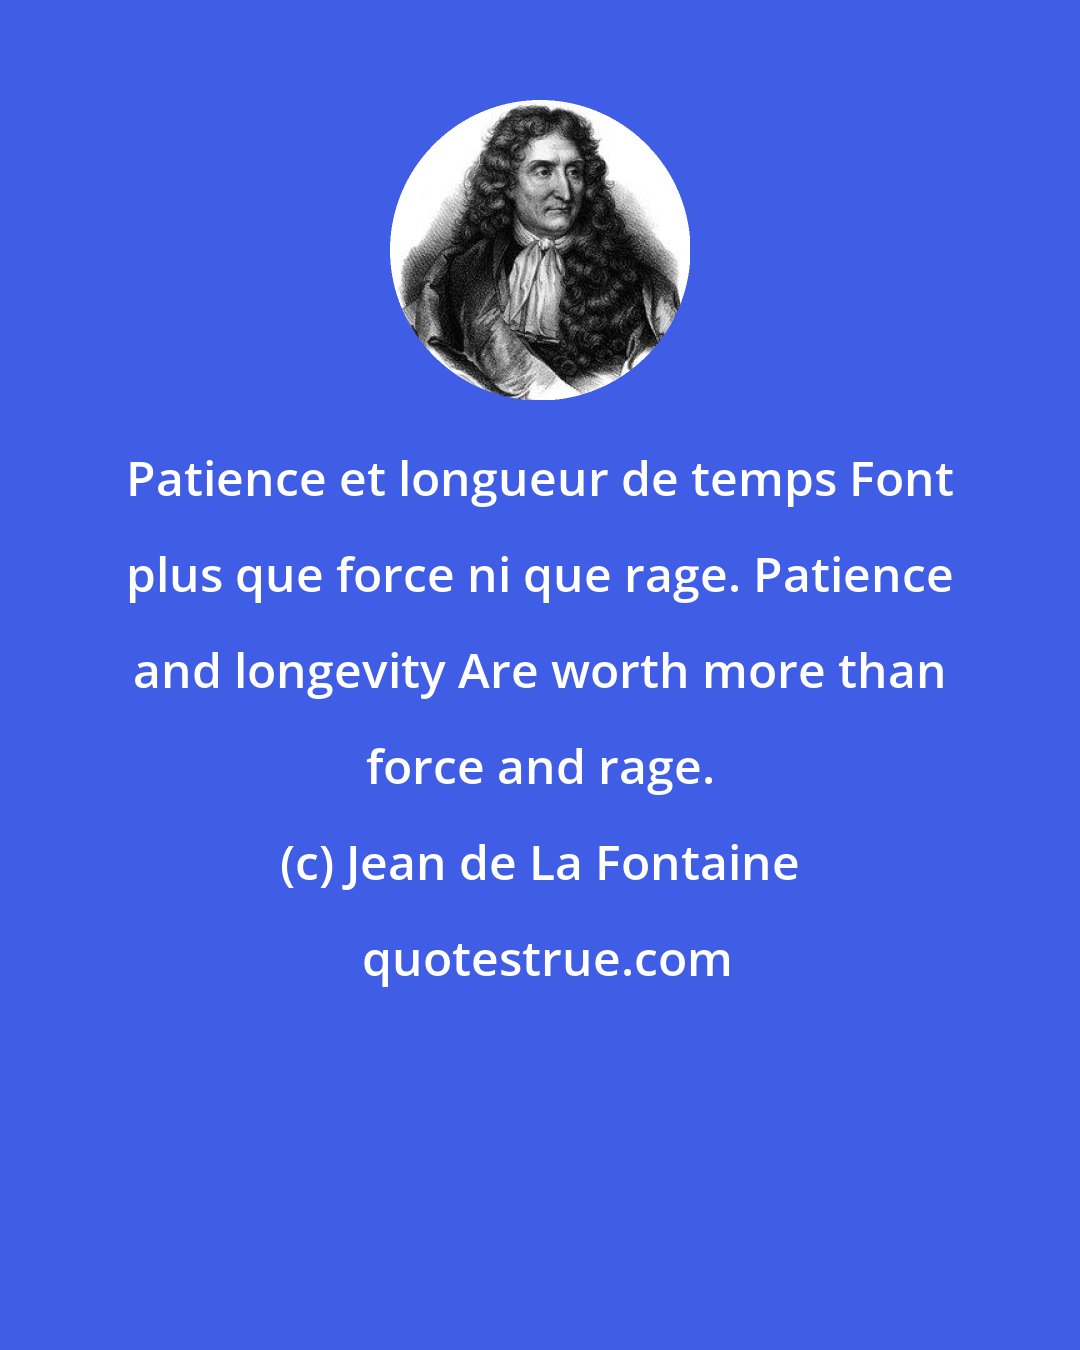 Jean de La Fontaine: Patience et longueur de temps Font plus que force ni que rage. Patience and longevity Are worth more than force and rage.